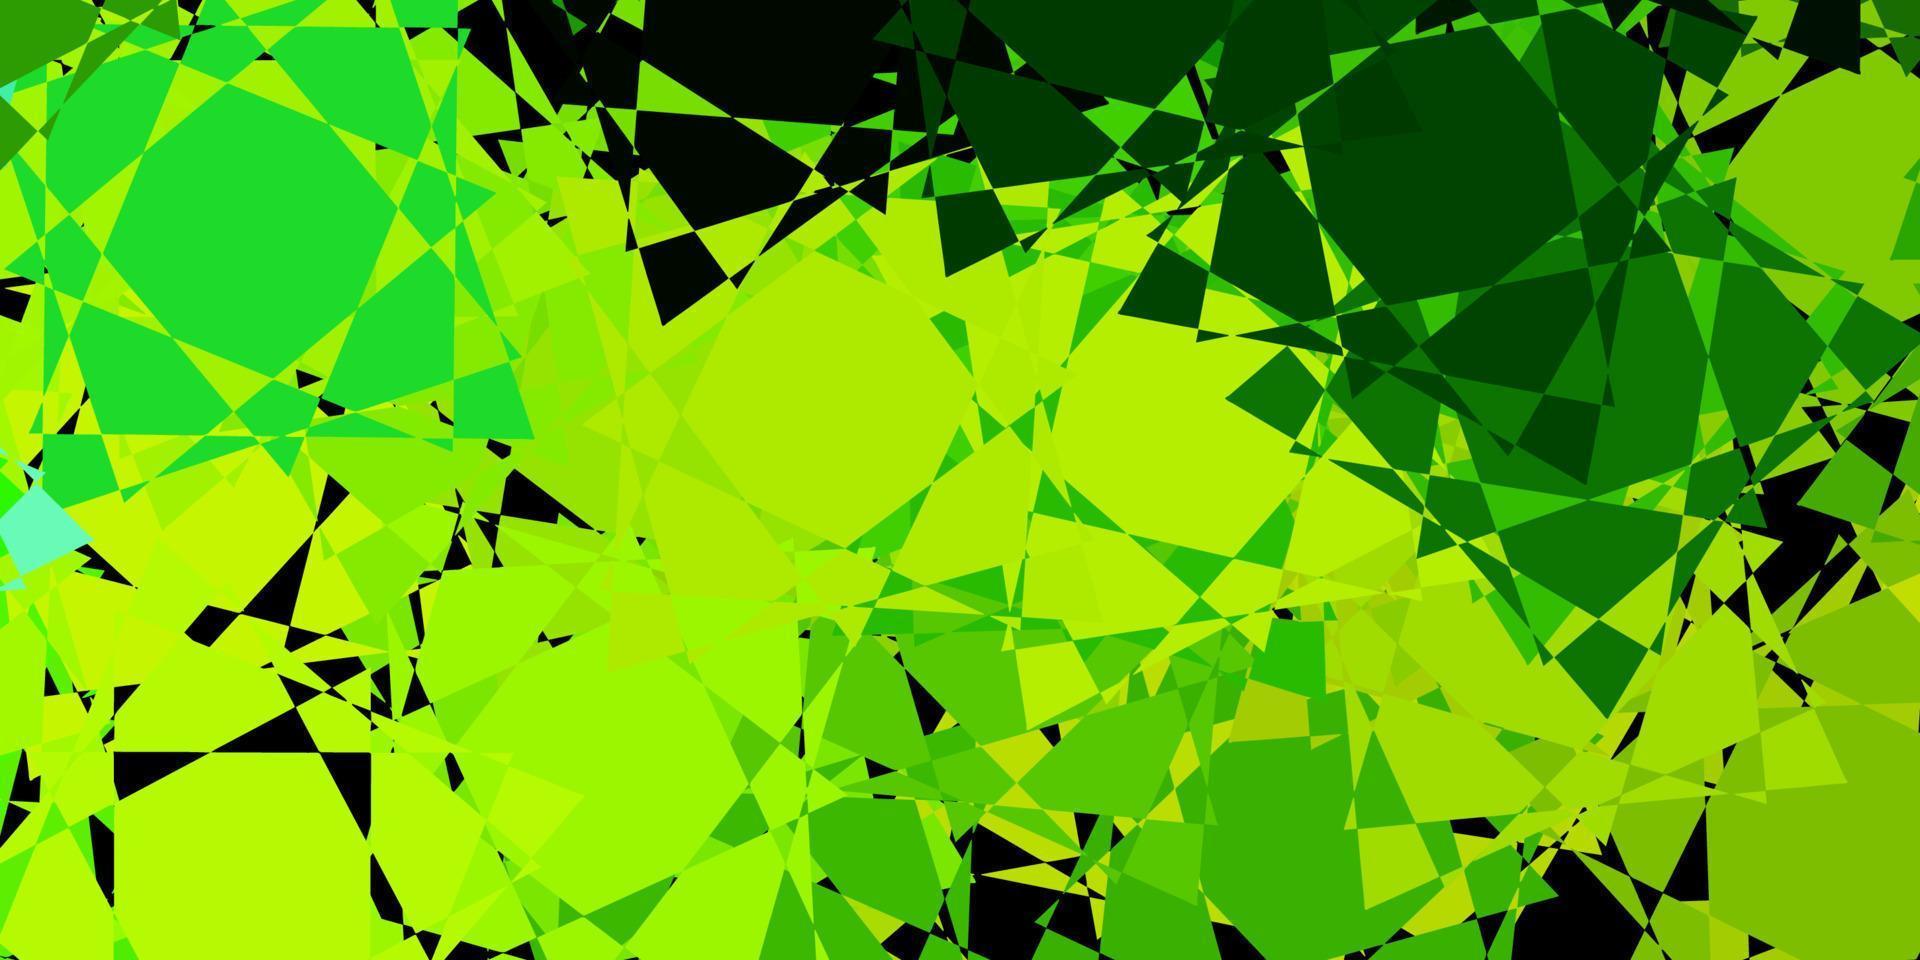 mörkgrön, gul vektorlayout med triangelformer. vektor